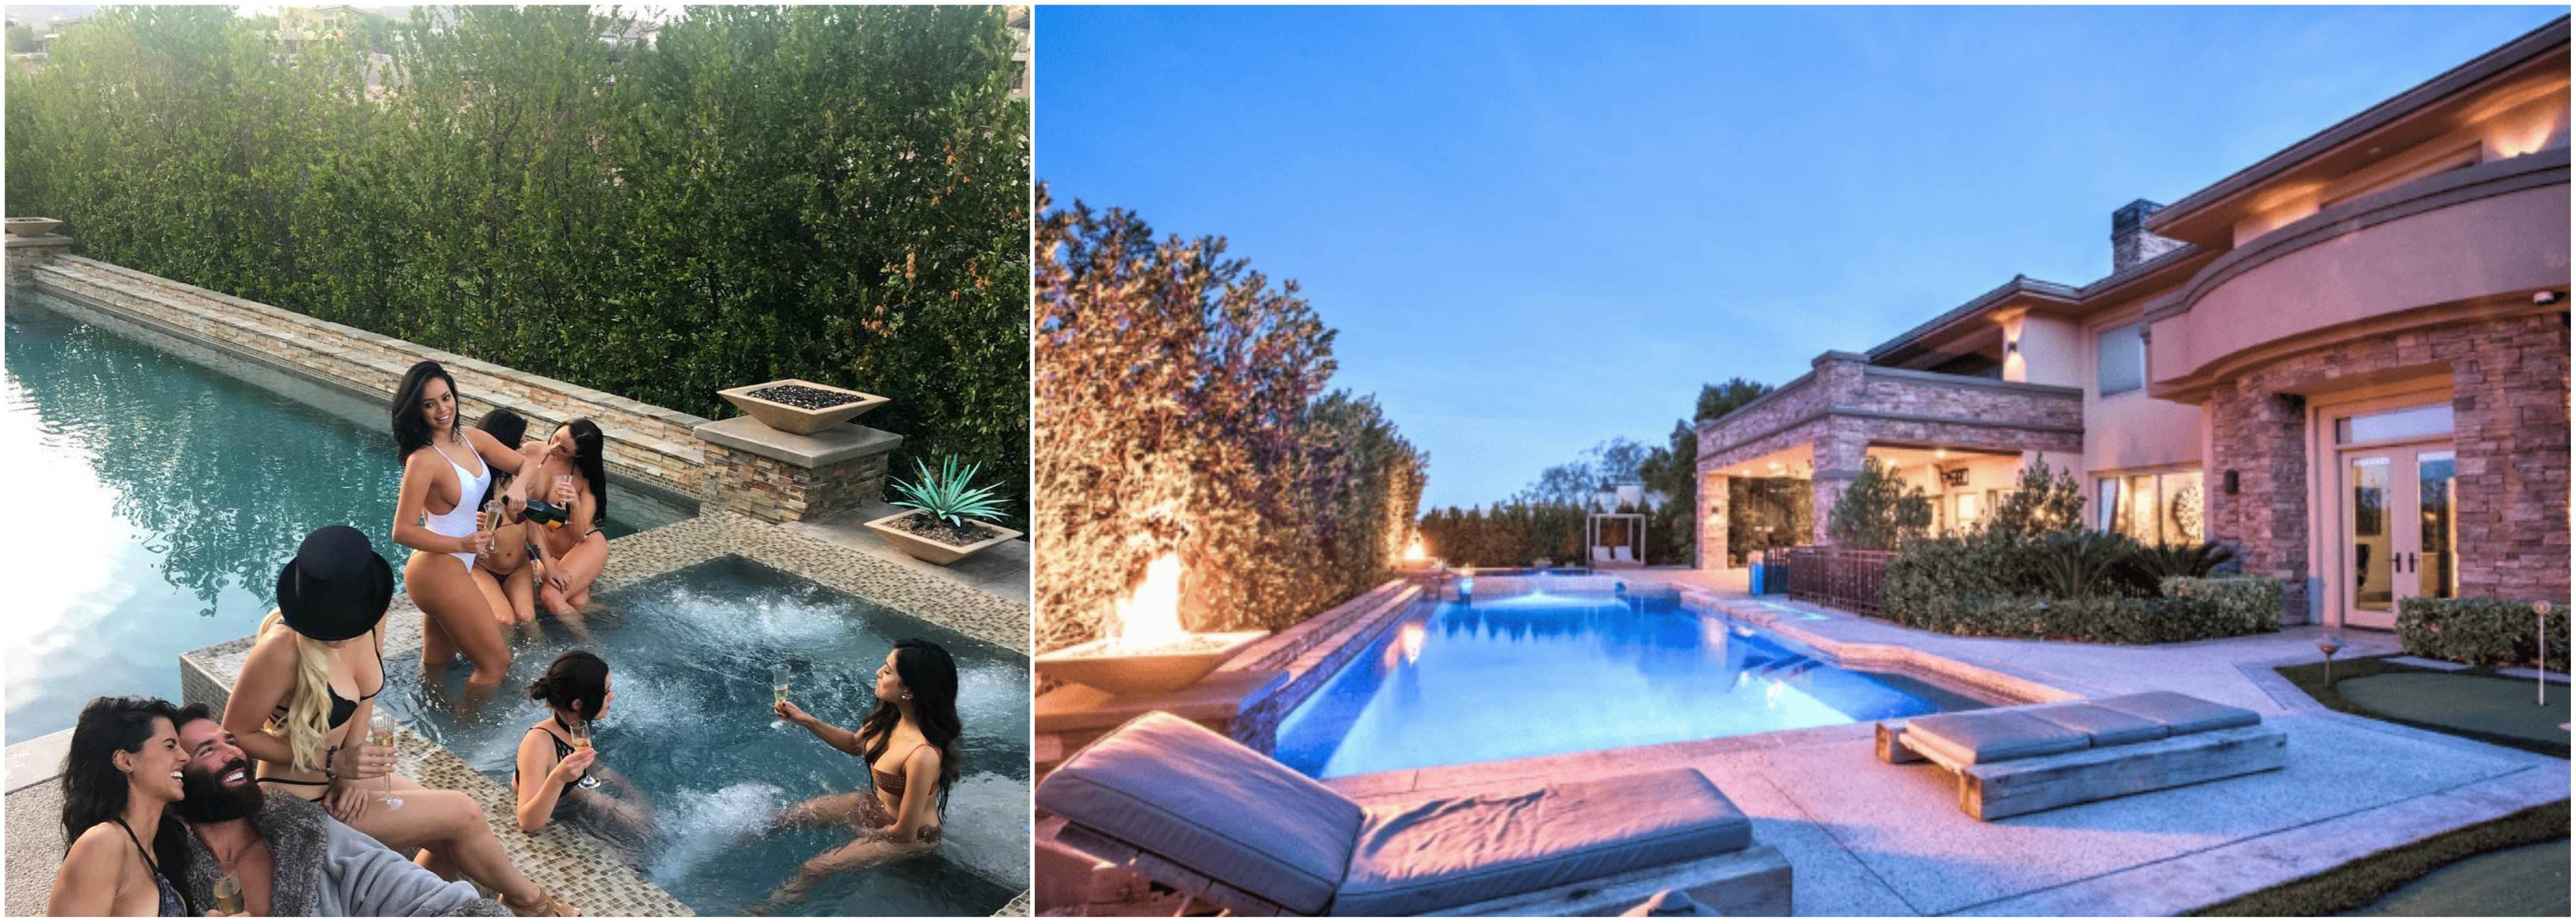 Mansão Dan Bilzerian, a mansão de Las Vegas, tem namoradas de piscina na banheira de hidromassagem